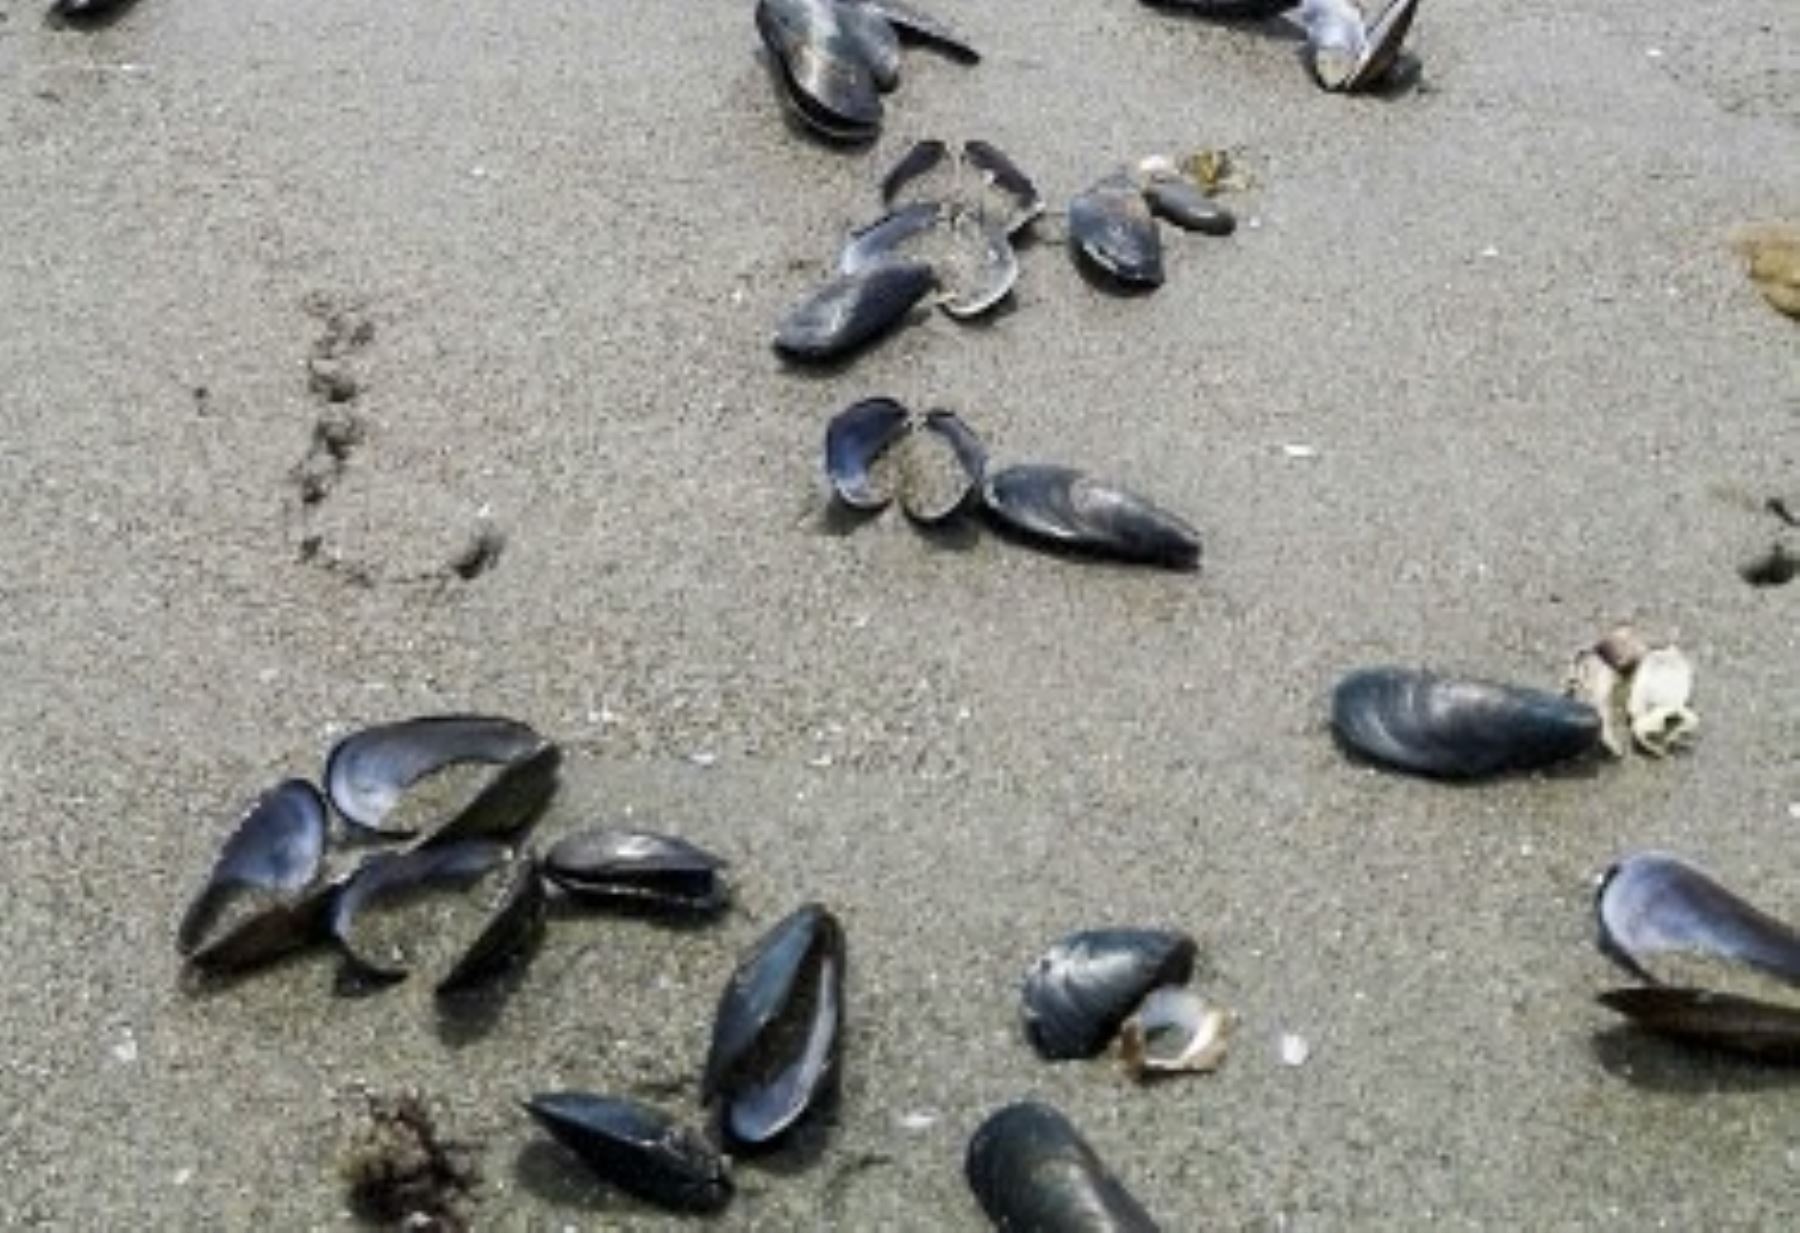 Los fuertes oleajes registrados los últimos días en la costa del norte del país ocasionaron que las playas del puerto de Pimentel, región Lambayeque, queden expuestas durante las bajas mareas, lo que produjo una varazón de moluscos, informó el Instituto del Mar del Perú (Imarpe).